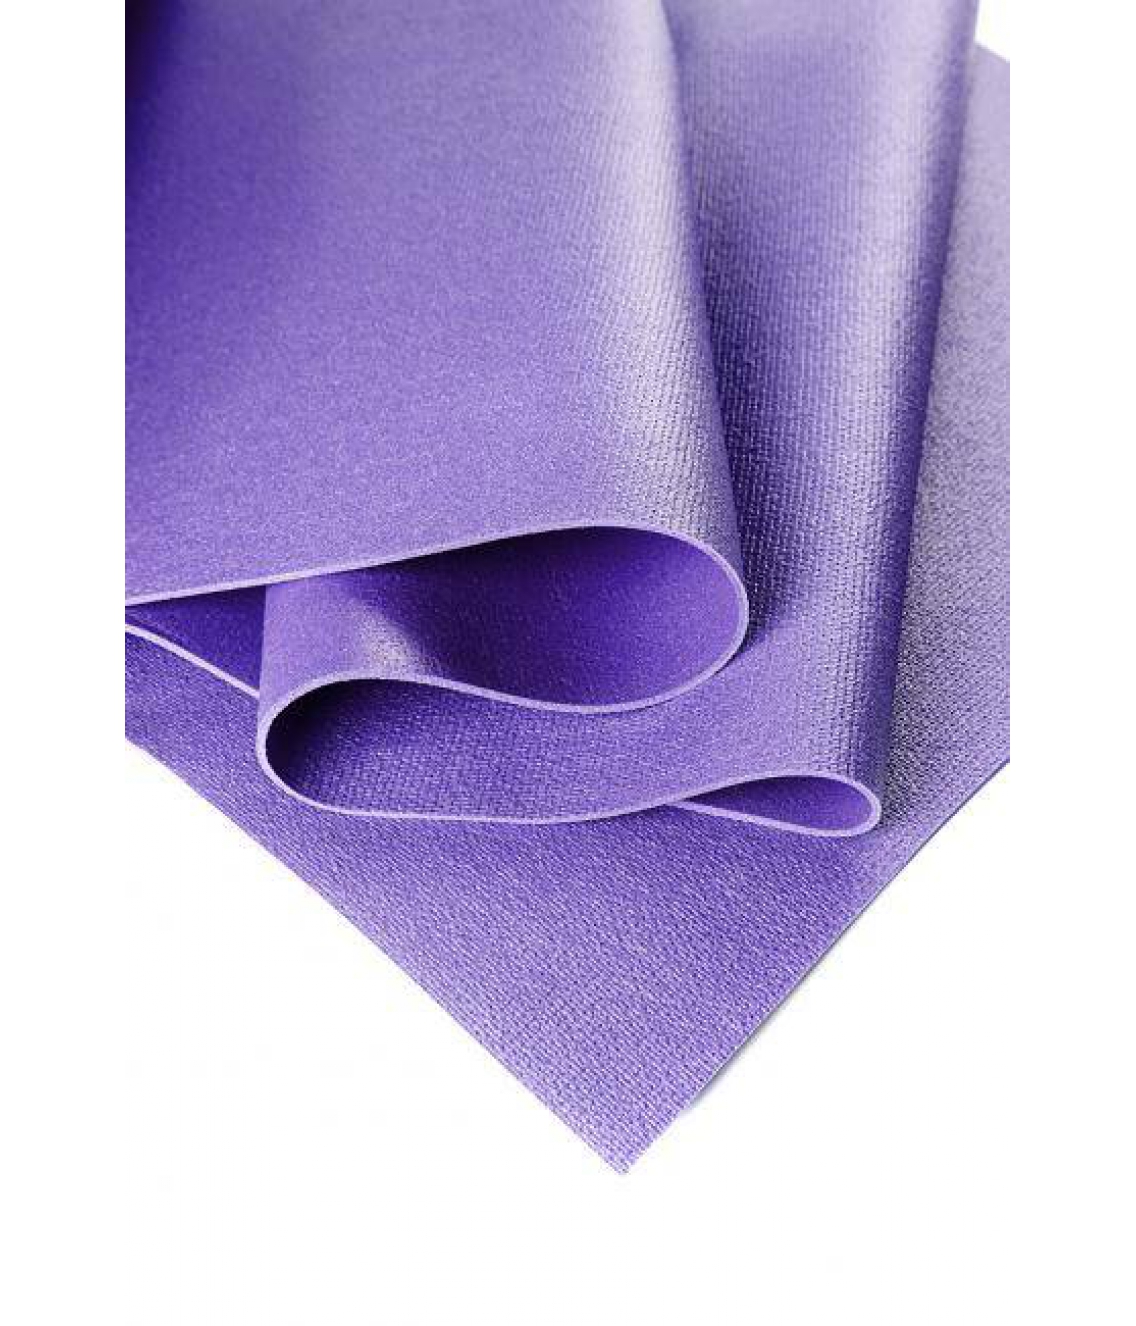 Коврик для йоги Yin-Yang Studio 220*80*0,45 см - Фиолетовый